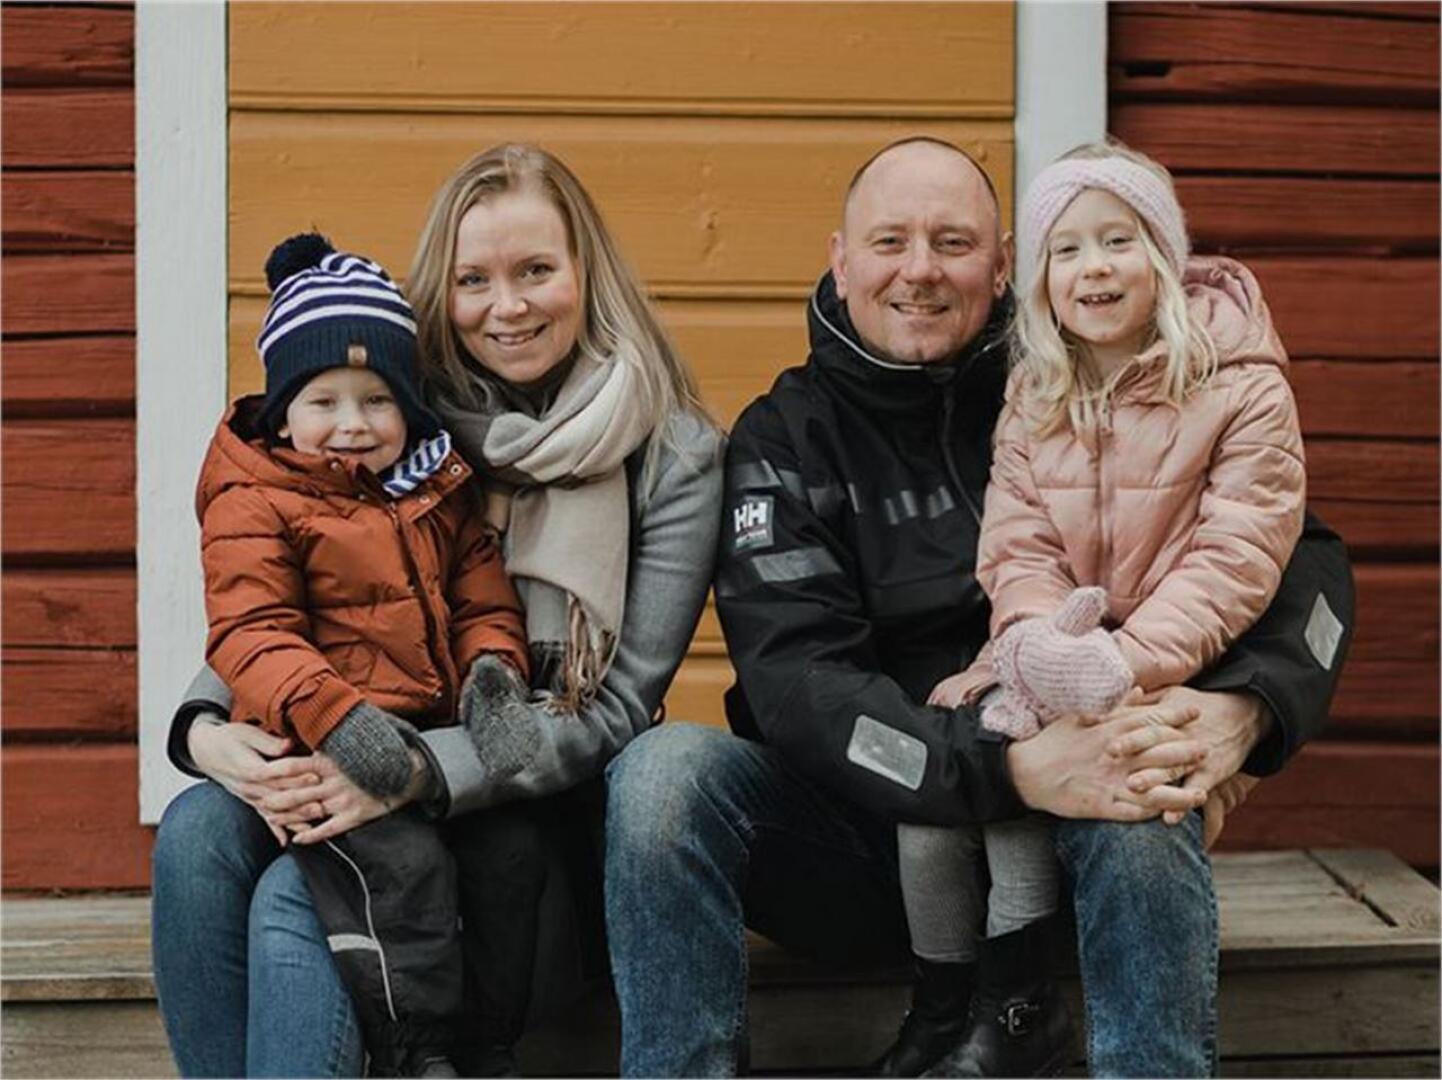 Linda ja Kalle Antus ovat keskittäneet perheen vakuutukset LähiTapiolan Pohjanmaalle jo vuosien ajan. He arvostavat paikallista palvelua sekä arkea helpottavia joustavia sähköisiä palveluja.